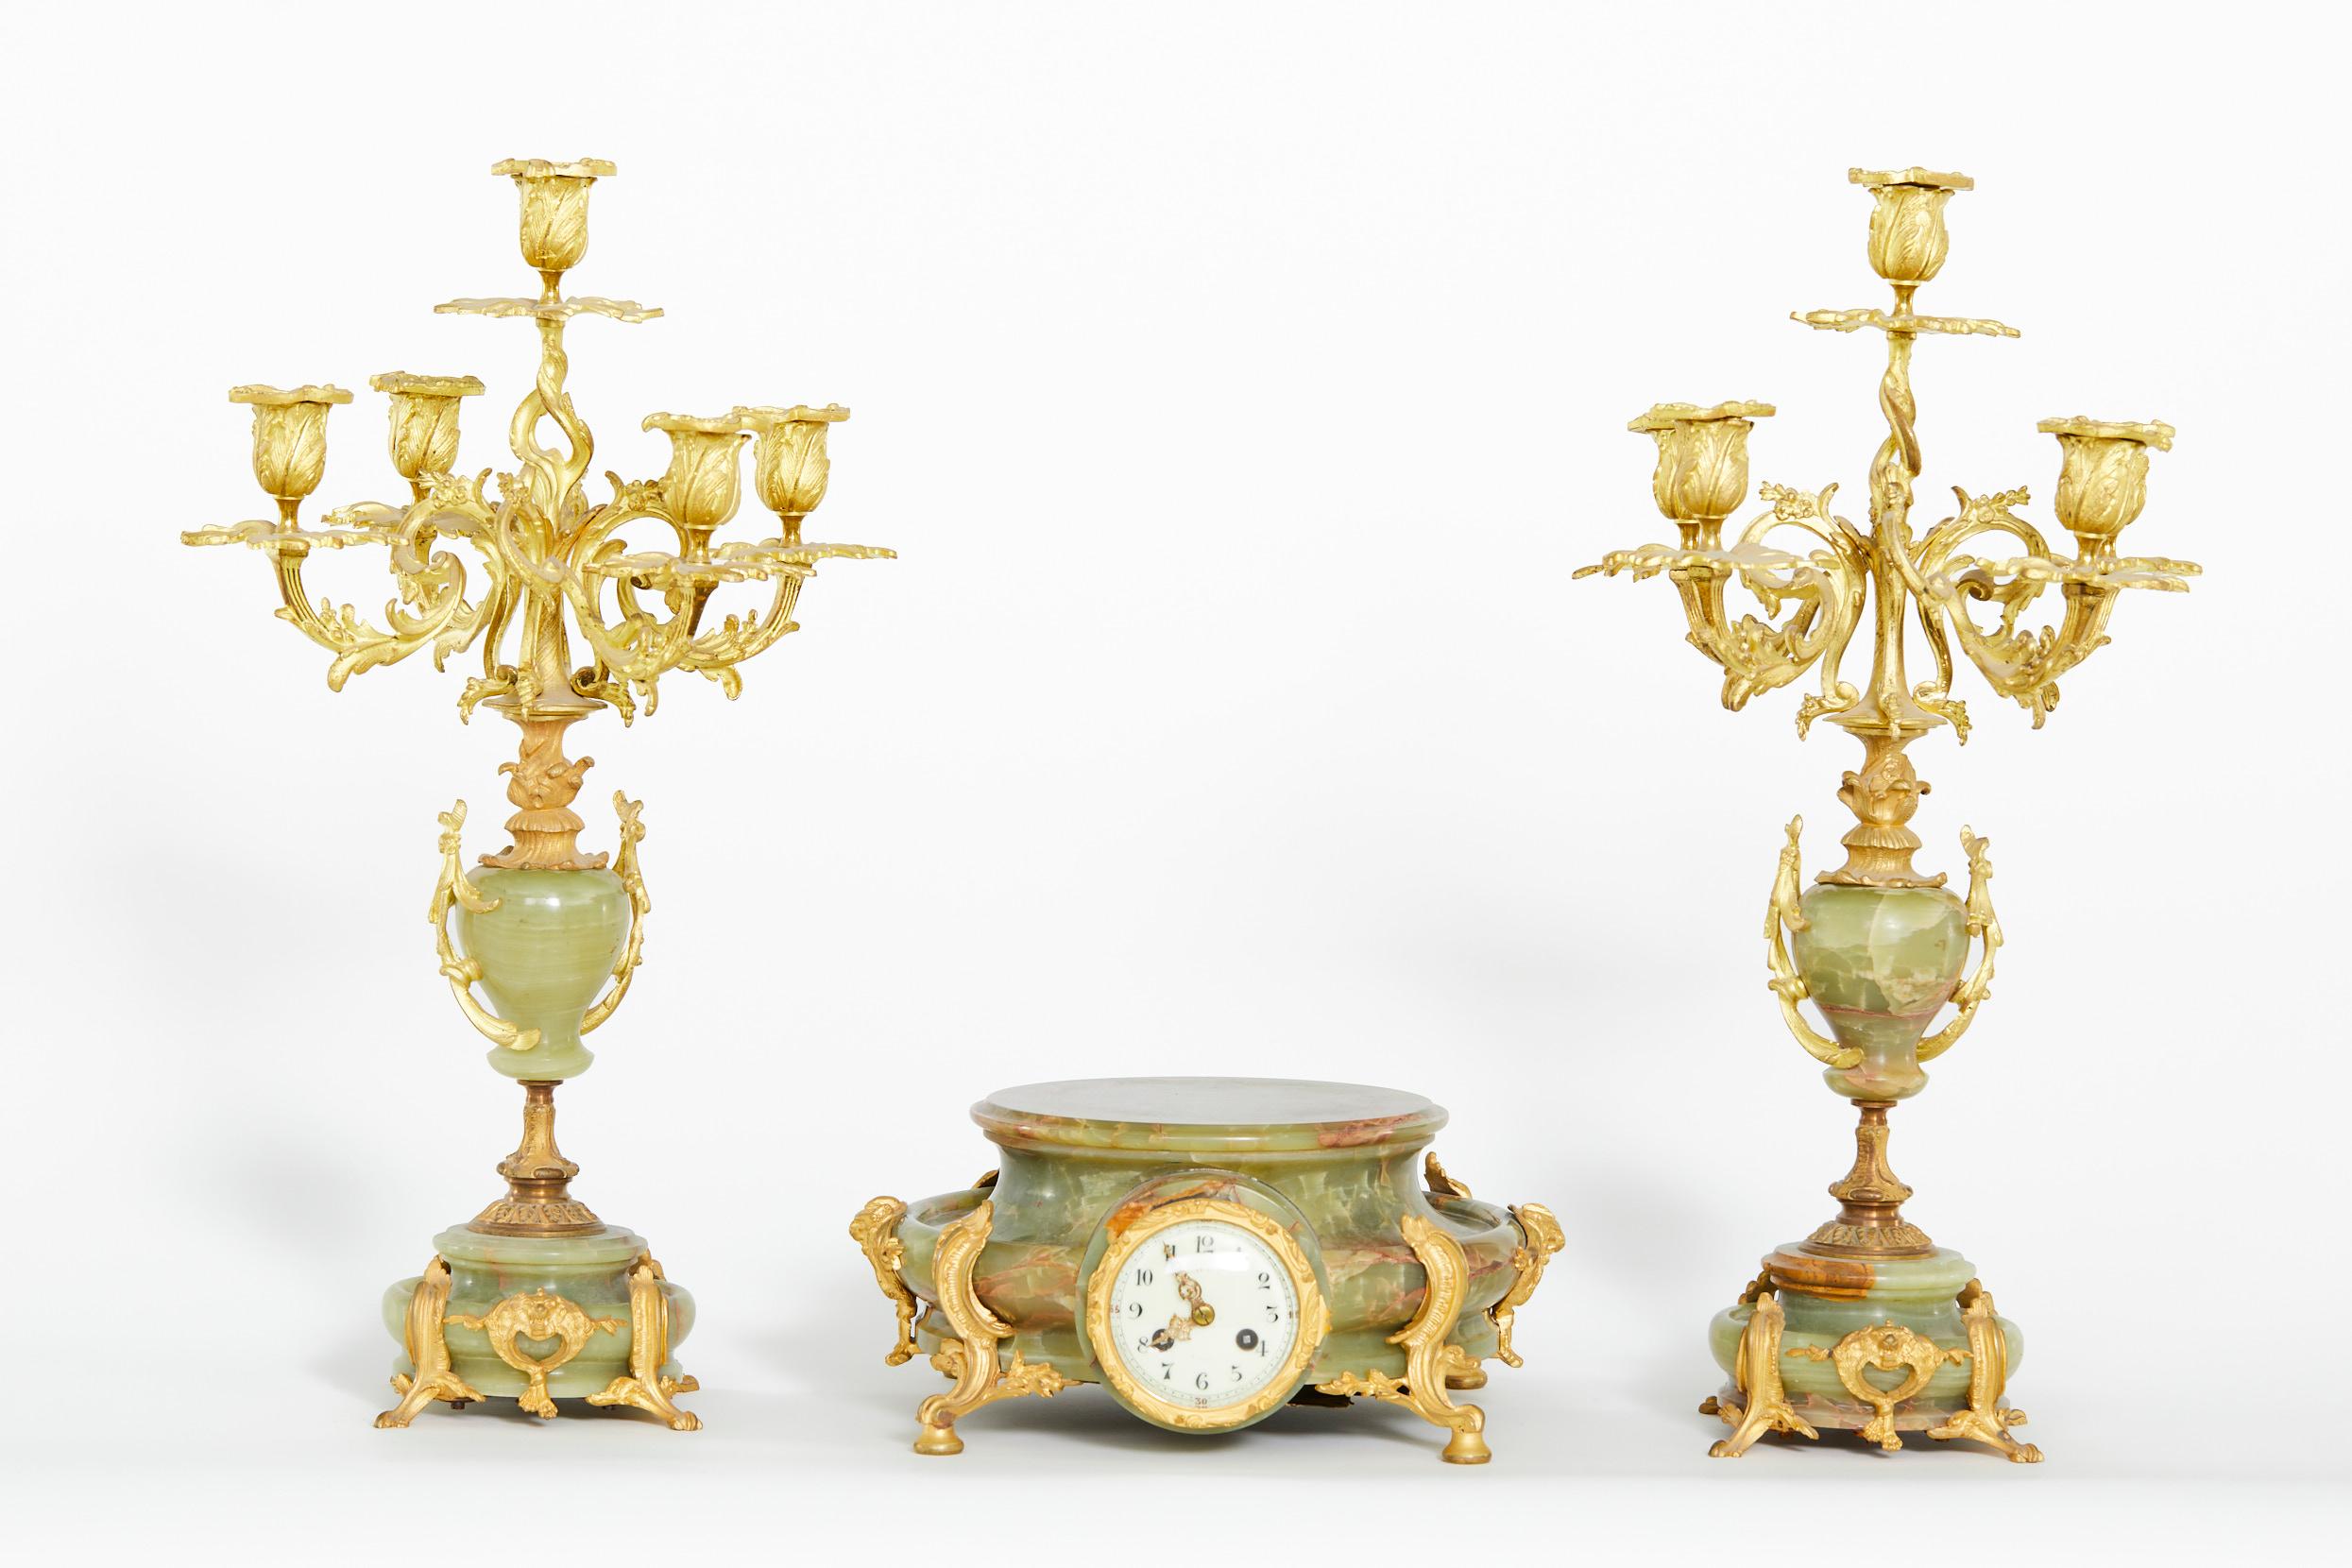 Mitte des 19. Jahrhunderts Französisch Onyx mit vergoldetem Messing und patiniertem Metall dreiteilige Uhr Garnitur gesetzt. Die Uhr verfügt über eine 8-Tage-Messing-Design Zeit und Schlagwerk auf eine Glocke. Die Uhr ist in gutem antiken Zustand.